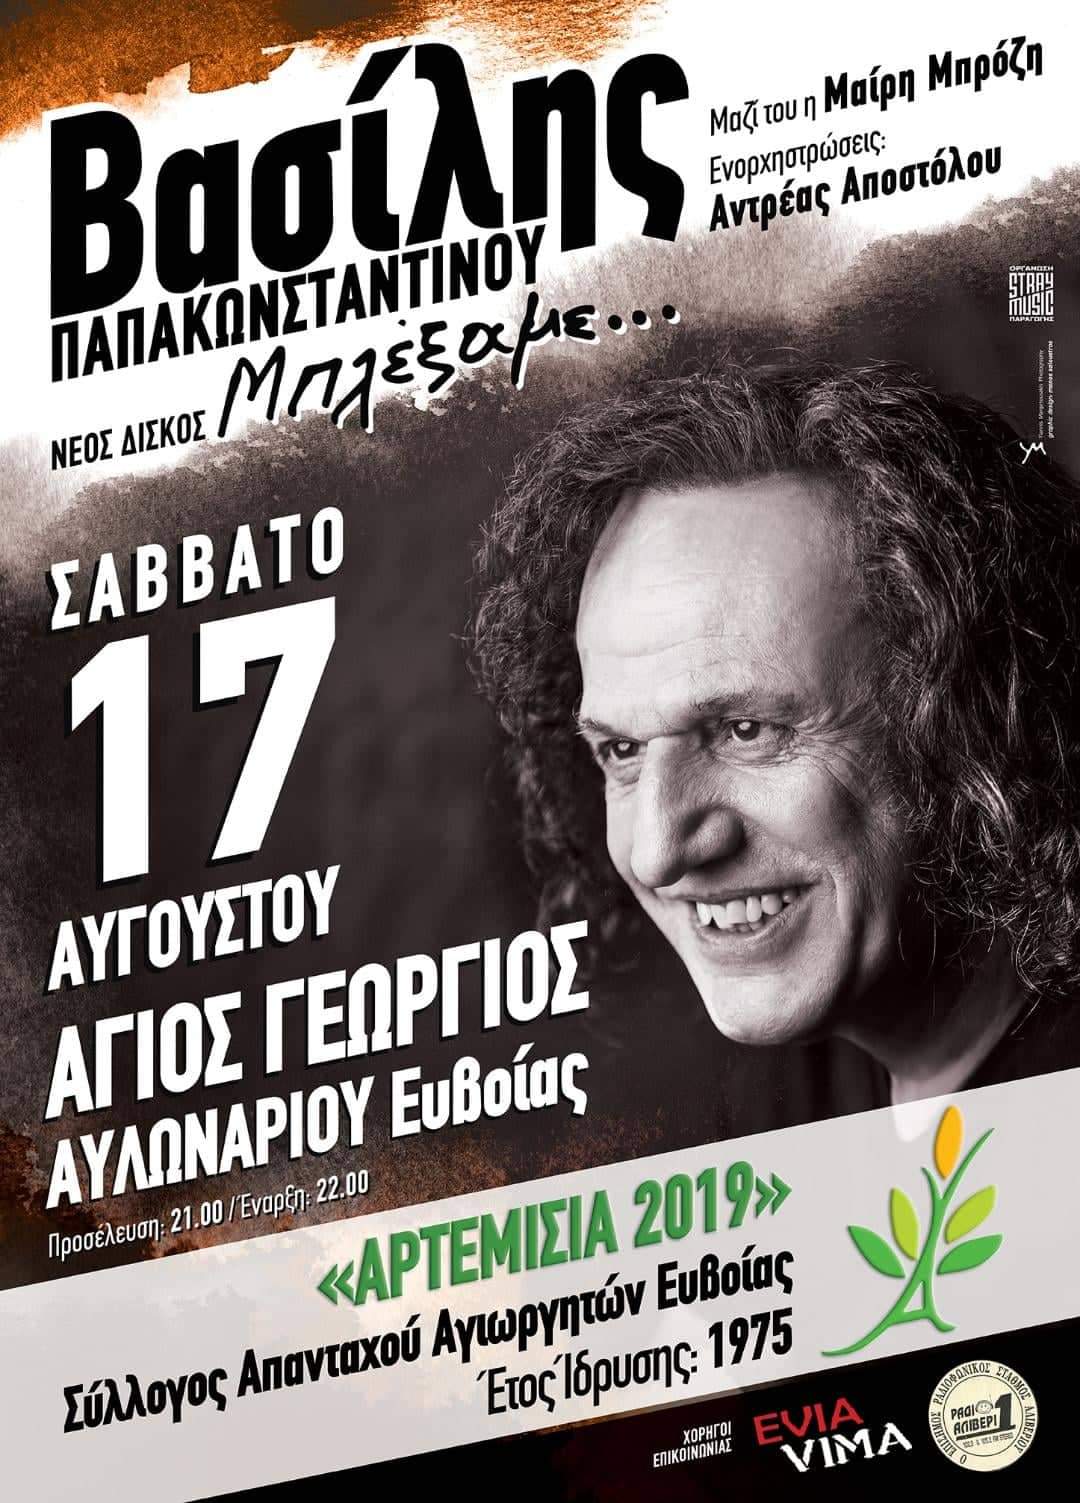 Ο Βασίλης Παπακωνσταντίνου στα “Αρτεμήσια 2019” στις 17 Αυγούστου